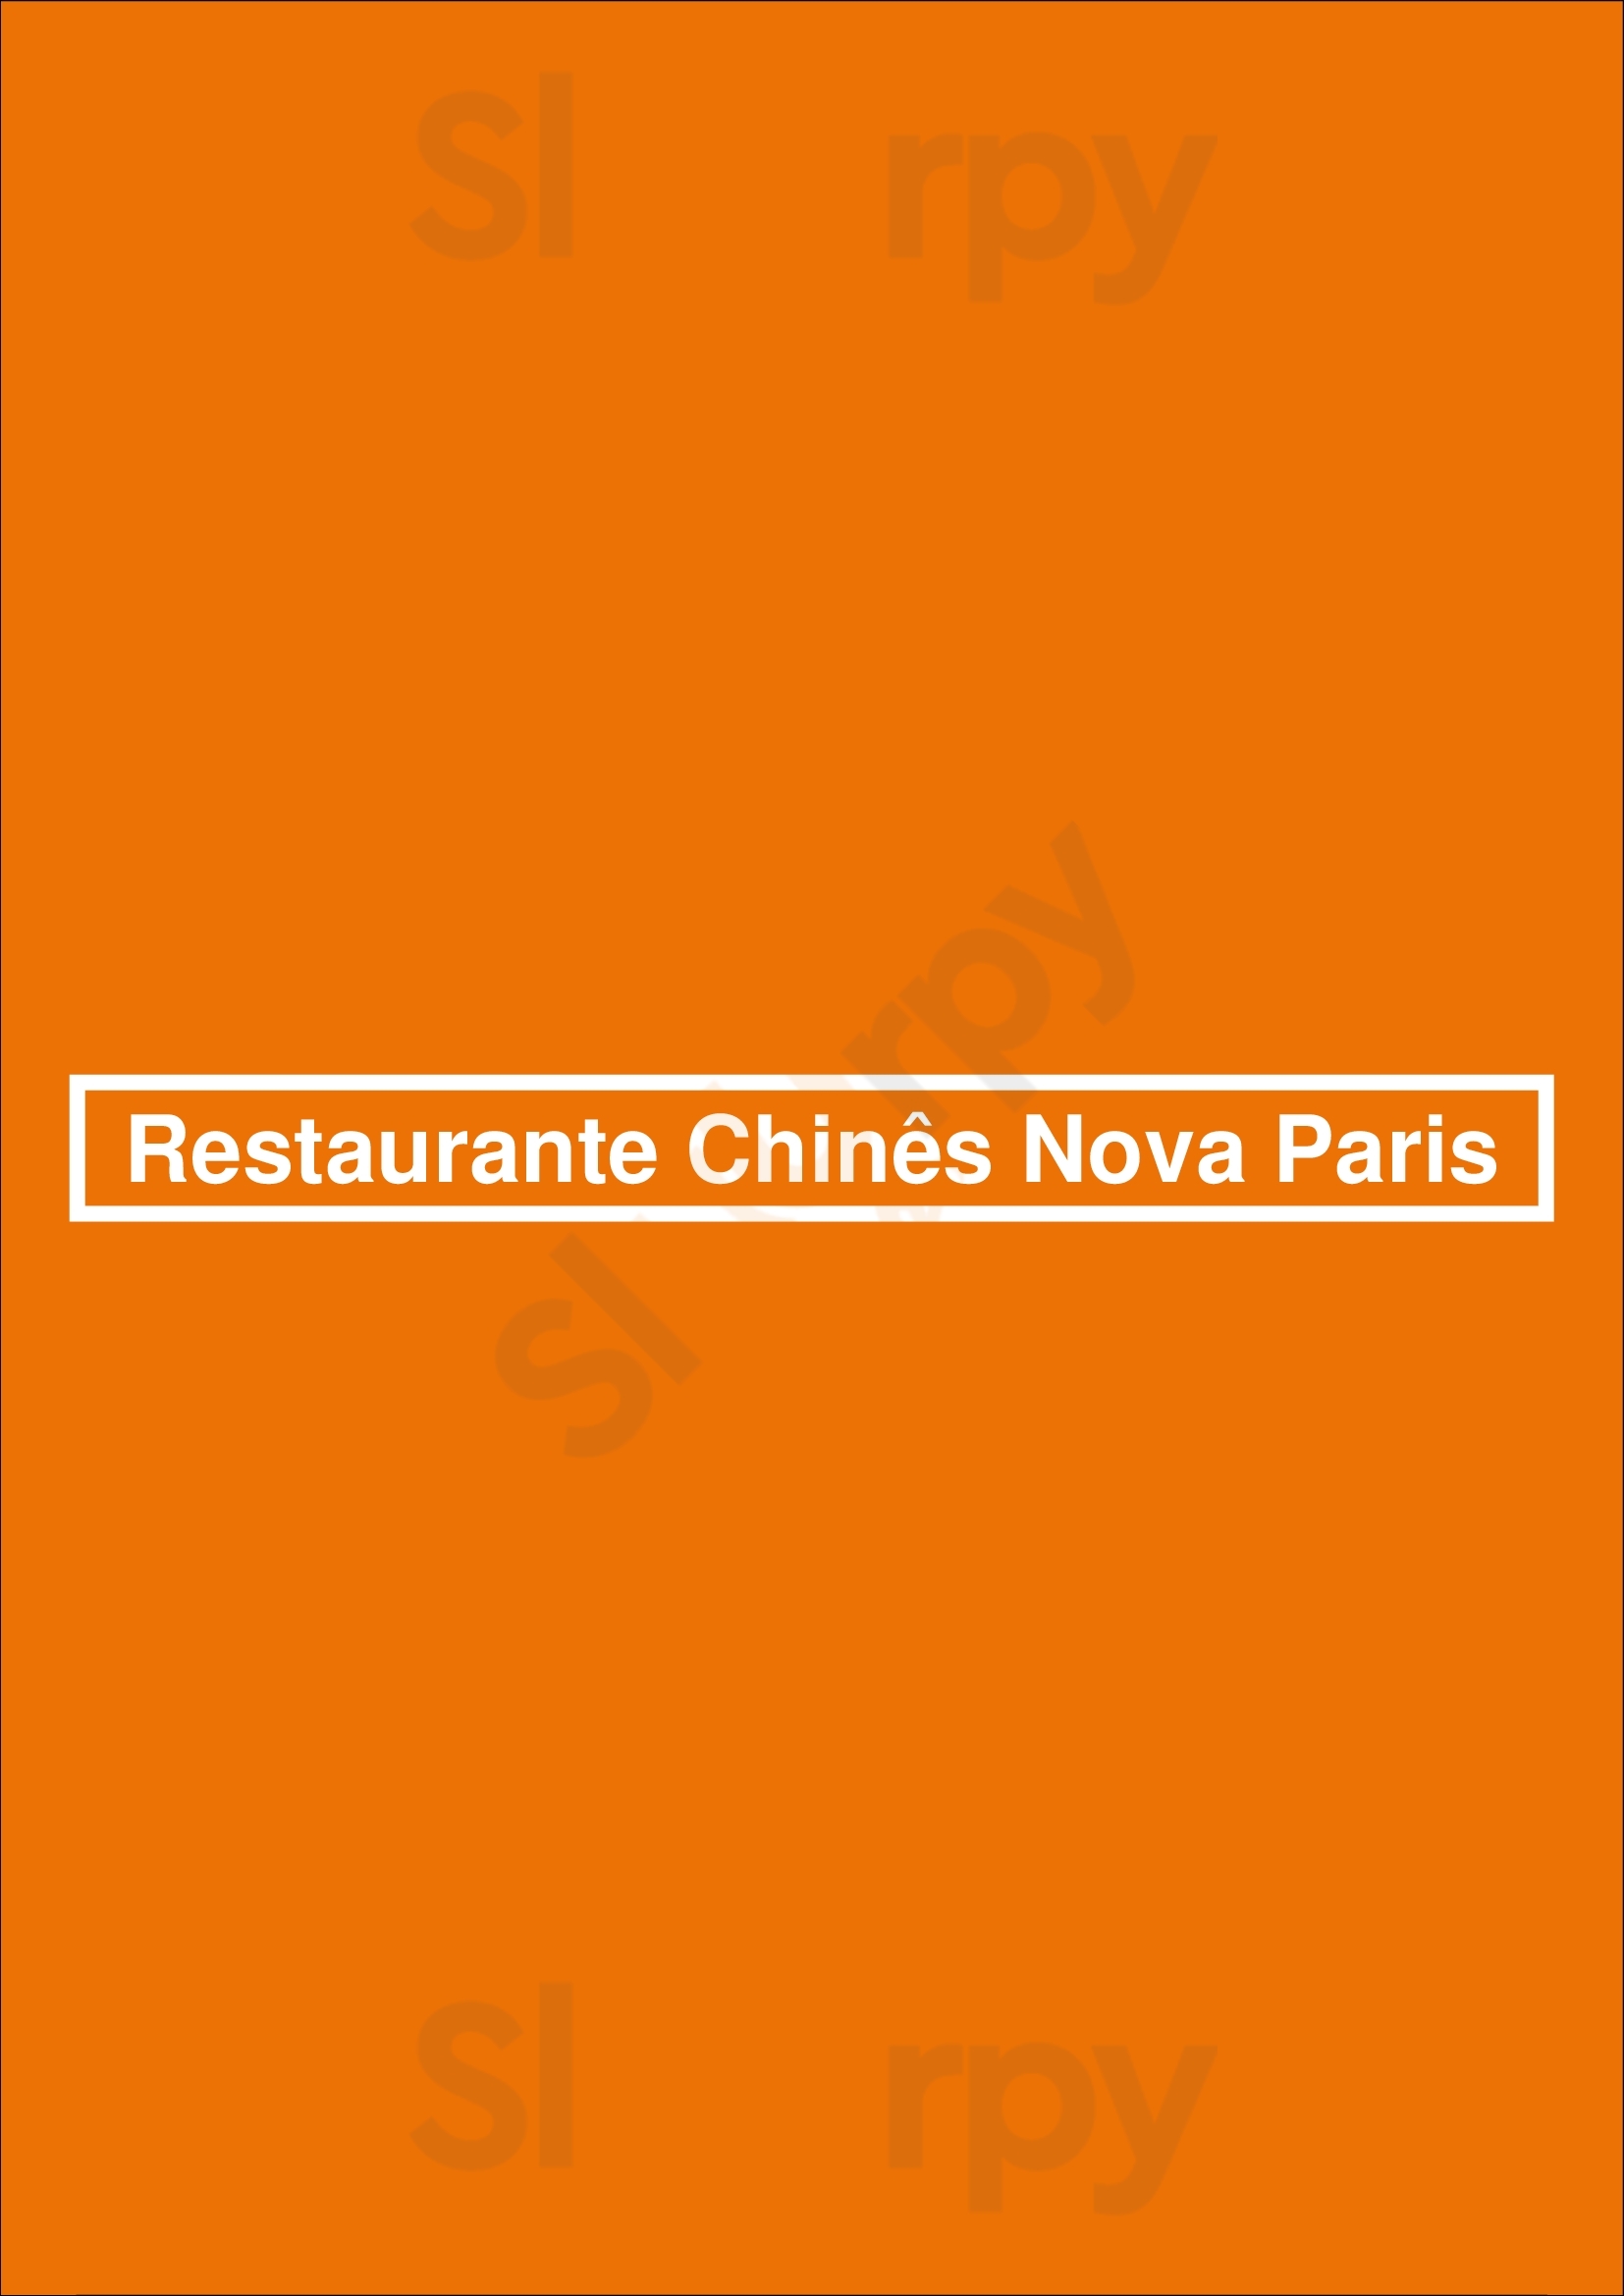 Restaurante Chinês Nova Paris Lisboa Menu - 1